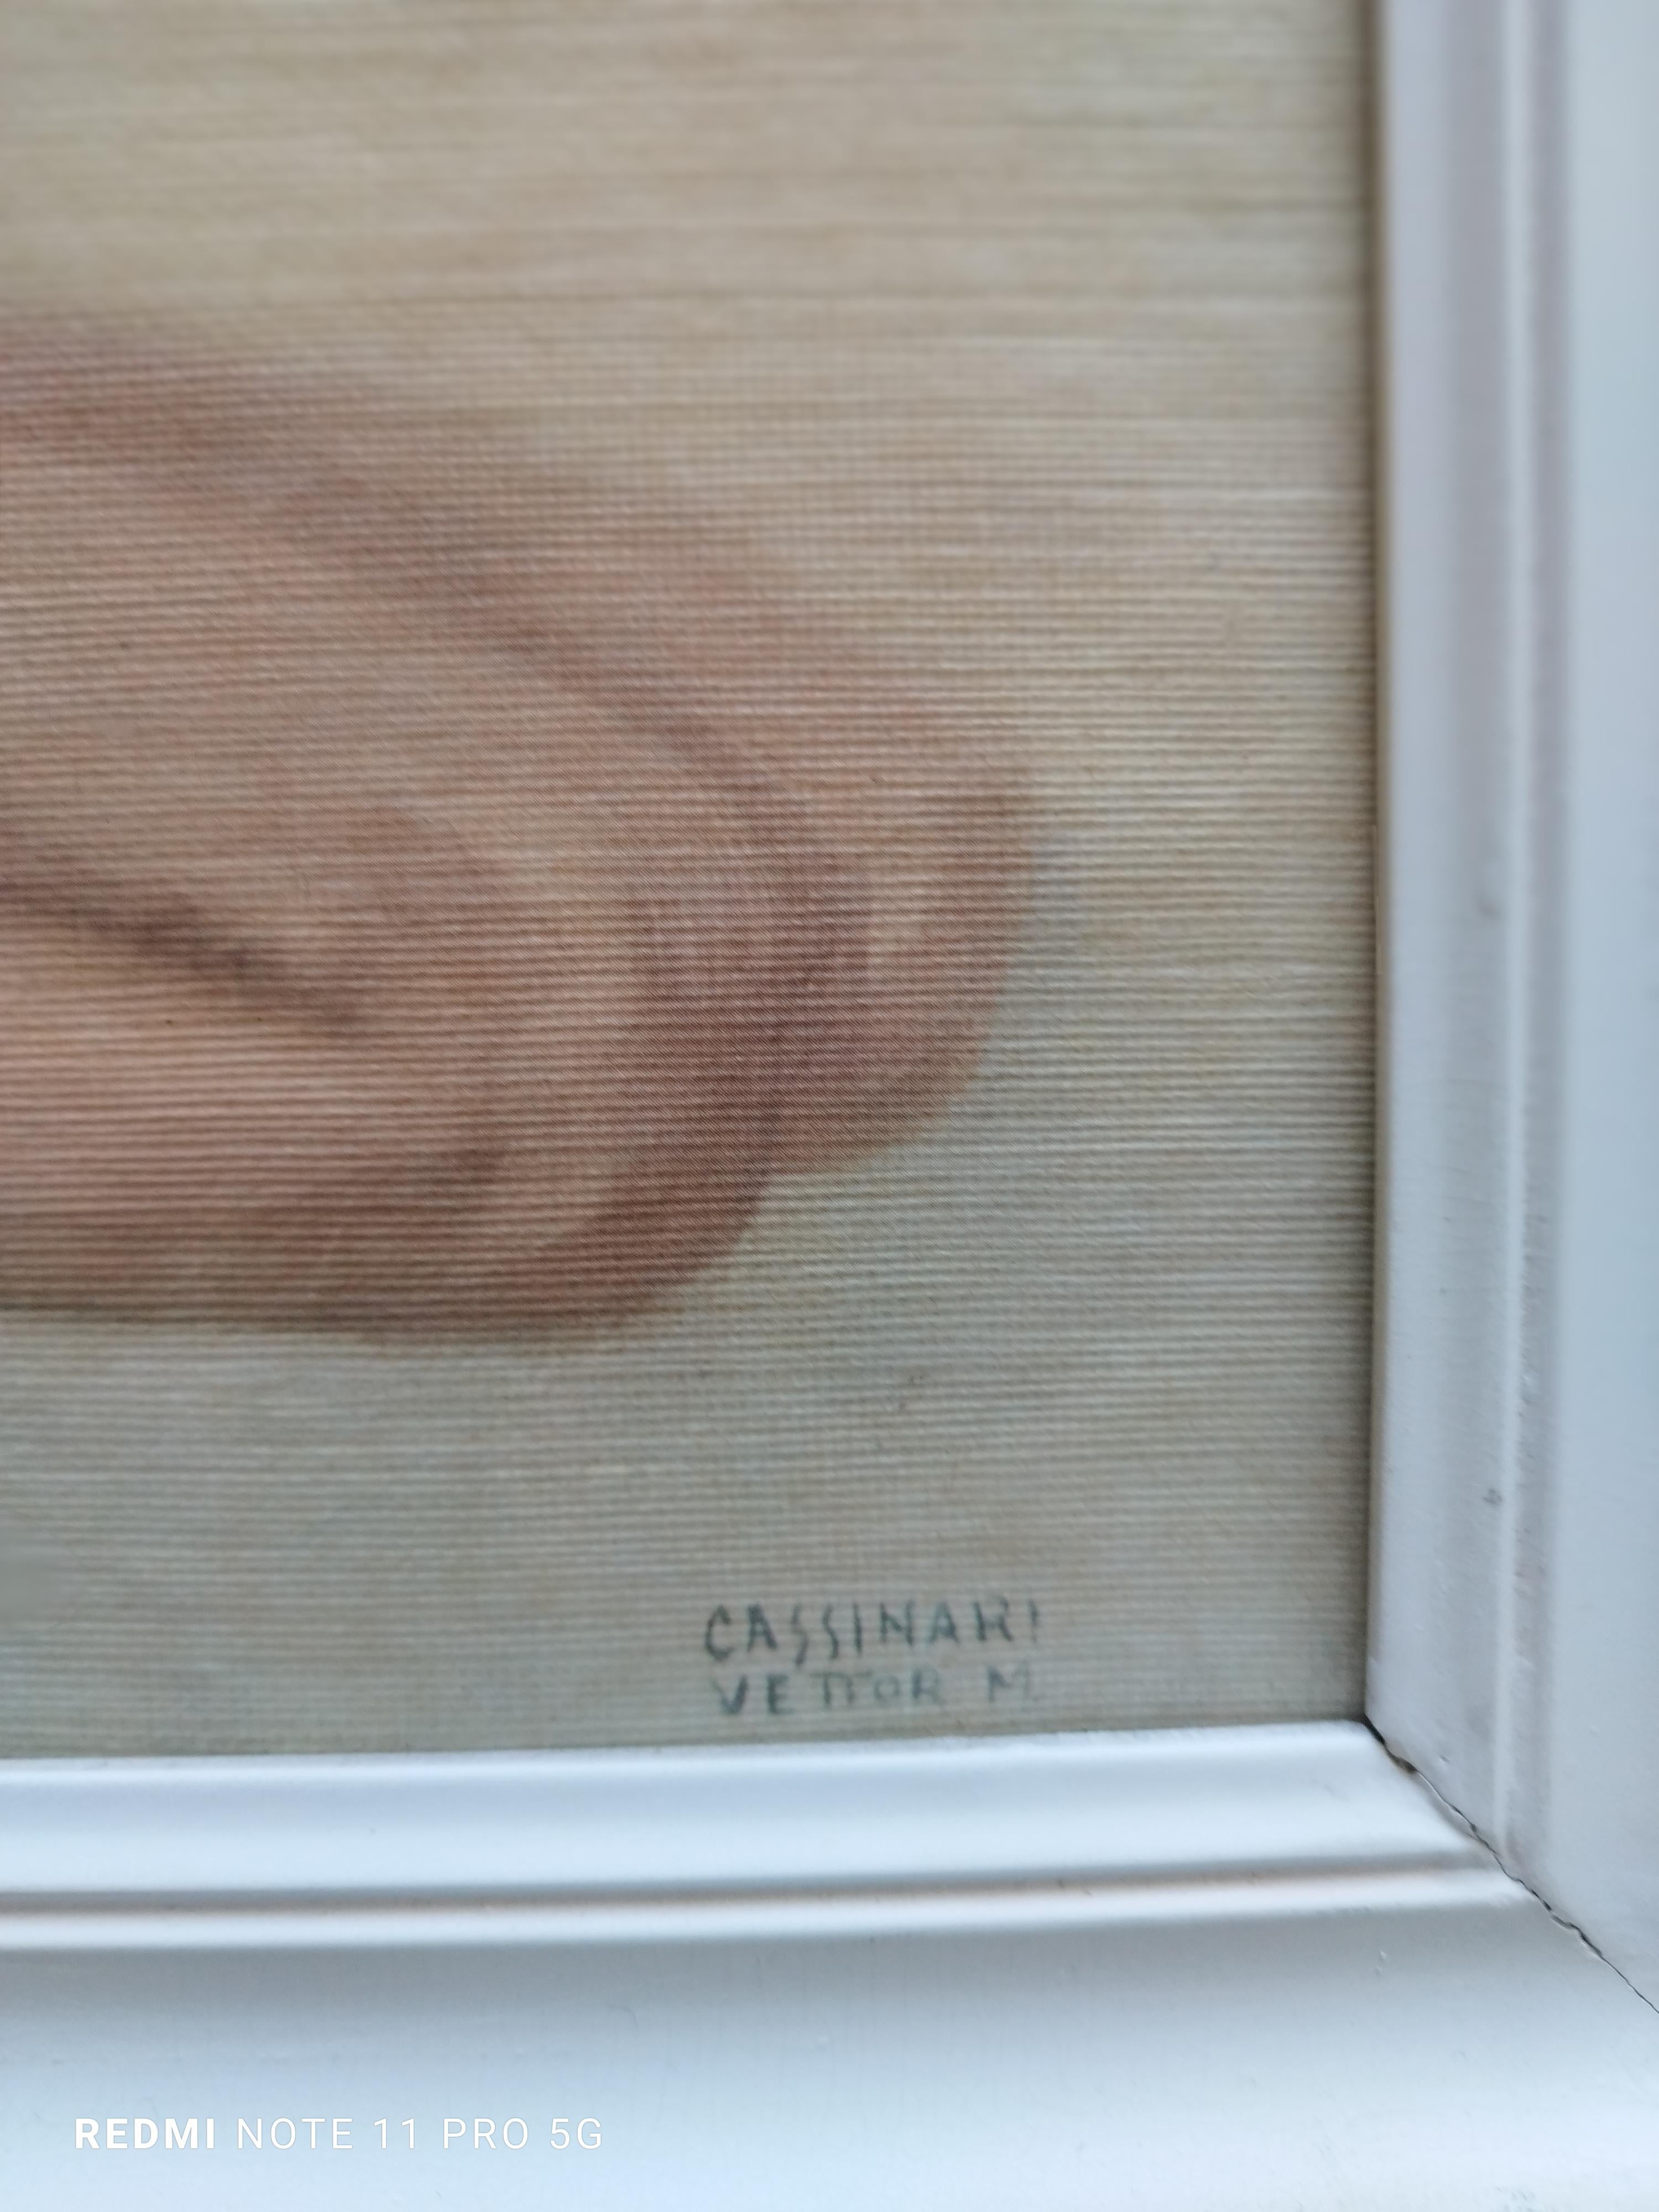 WOMAN'S NUDE - Giclée-Druck auf Leinwand – Print von Marcello Cassinari Vettor